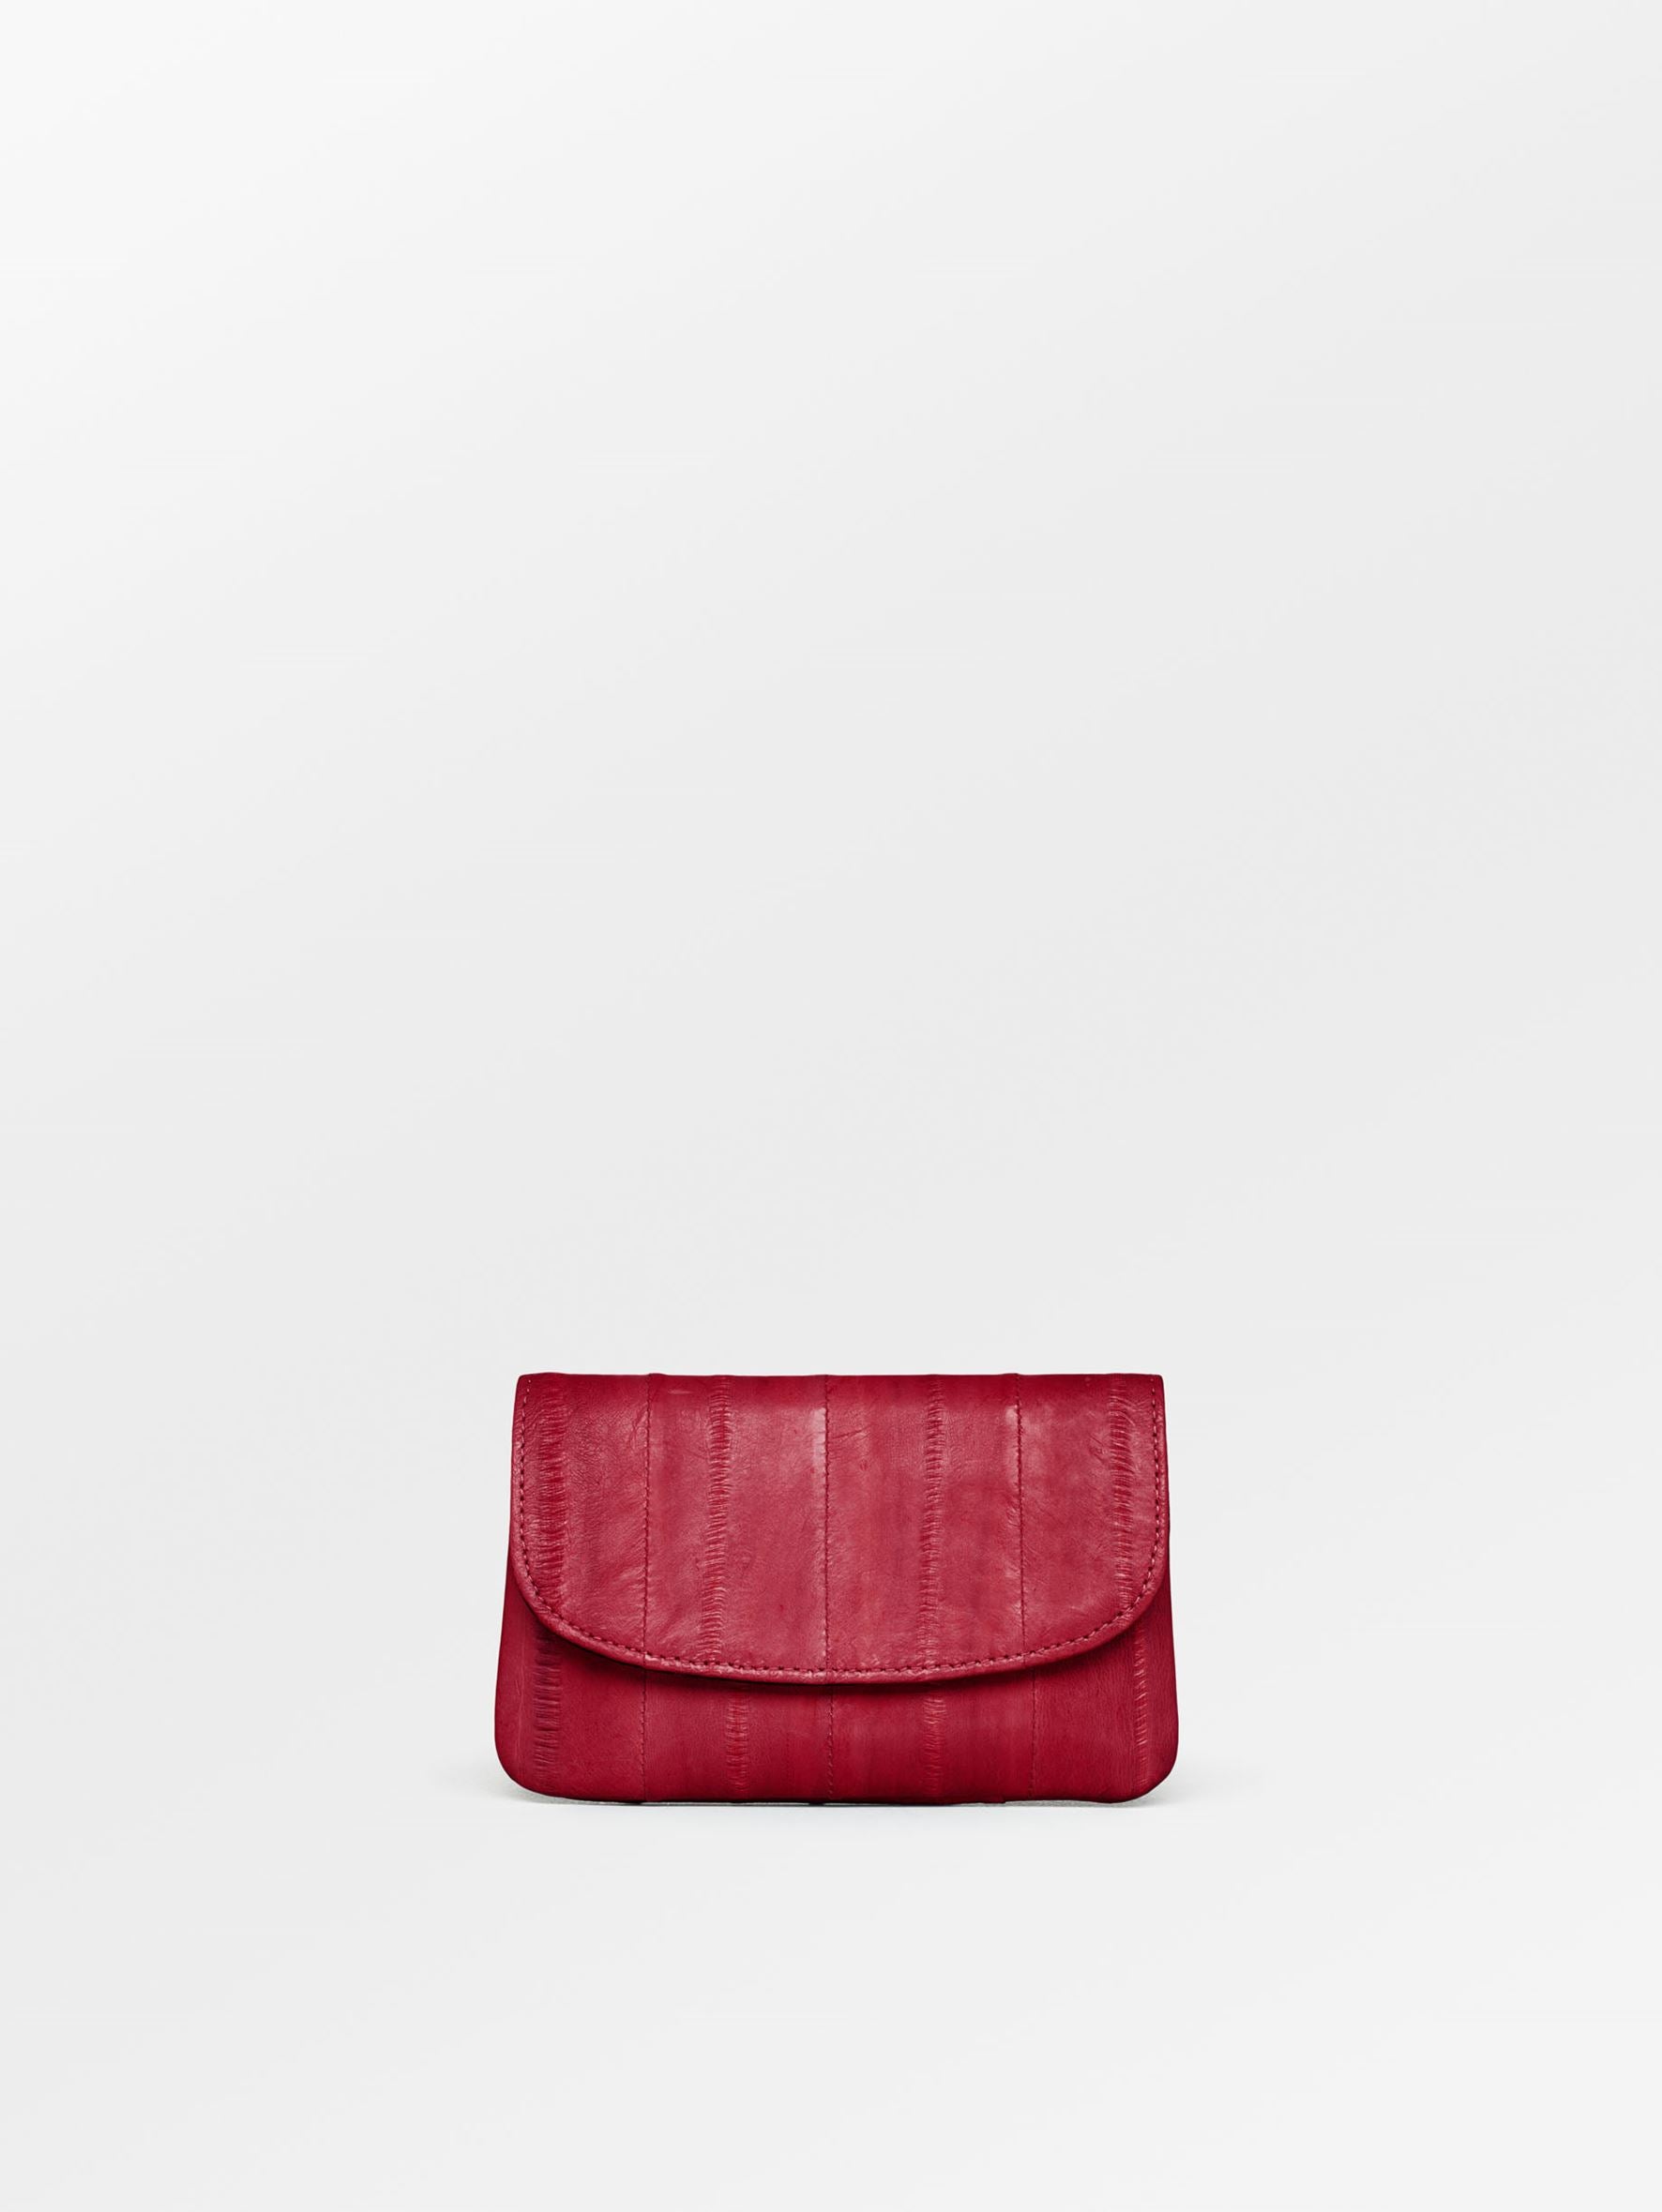 Becksöndergaard, Handy Purse - Red, accessories